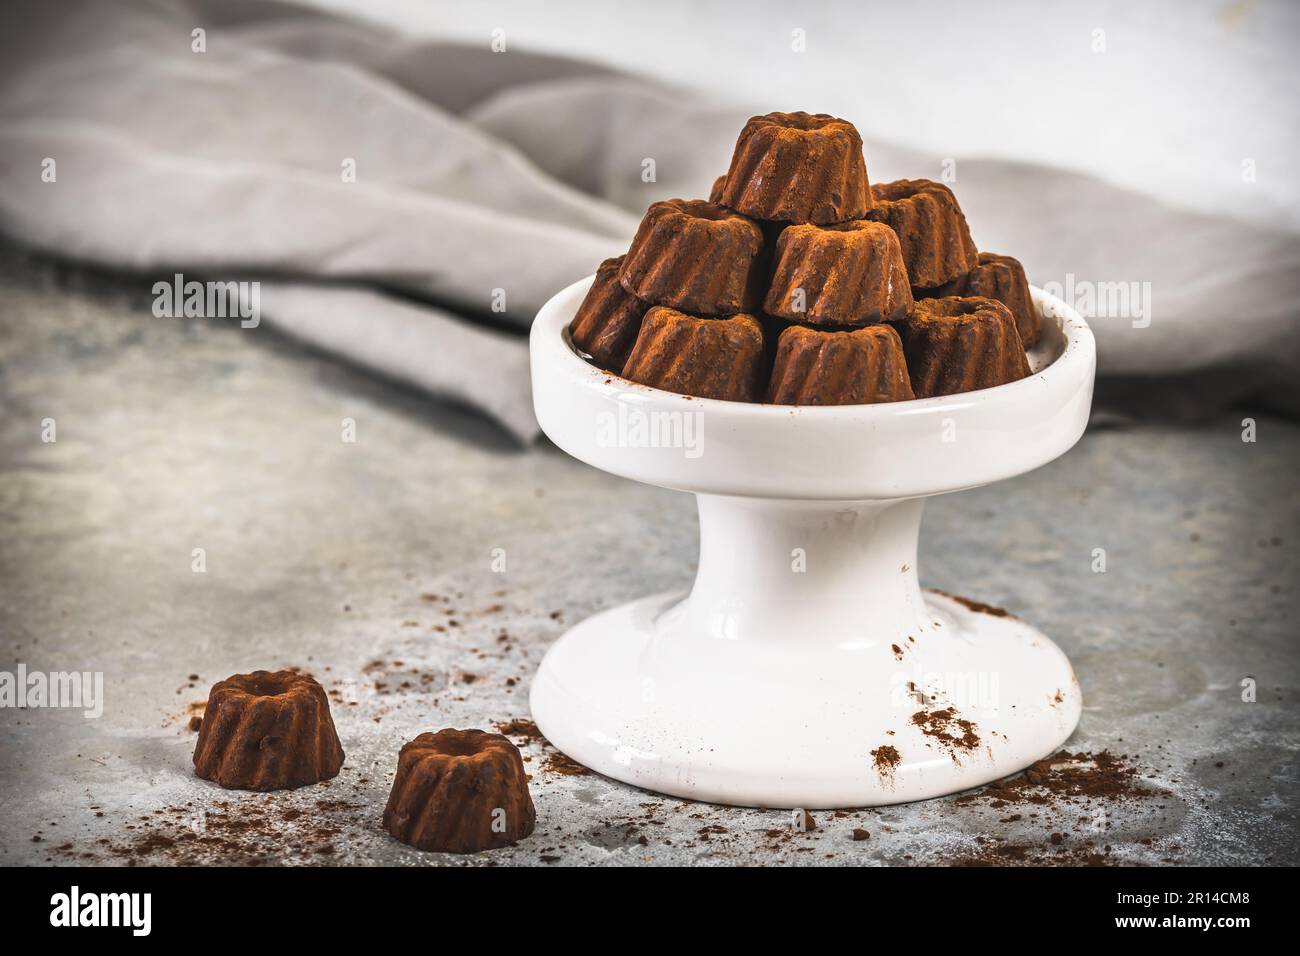 Schokoladenpralinen in Form von kleinen, kakaogetränkten Bundtkuchen auf hellgrauem Hintergrund Stockfoto